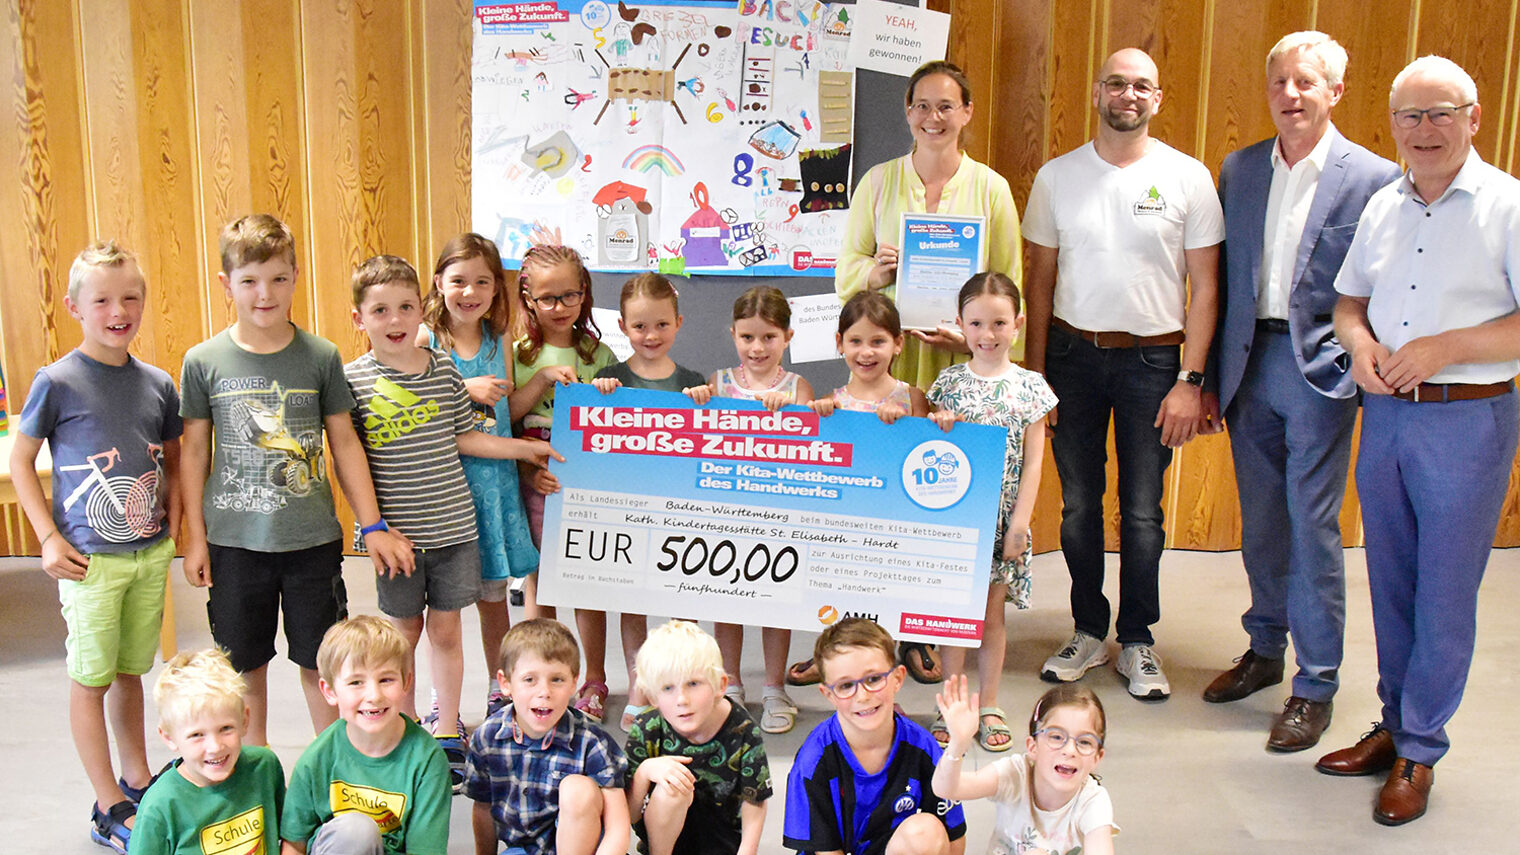 Kindergartengruppe mit Vertretern der Handwerkskammer Konstanz und großem Scheck über 500 Euro als Gewinn des Kita-Wettbewerbs.